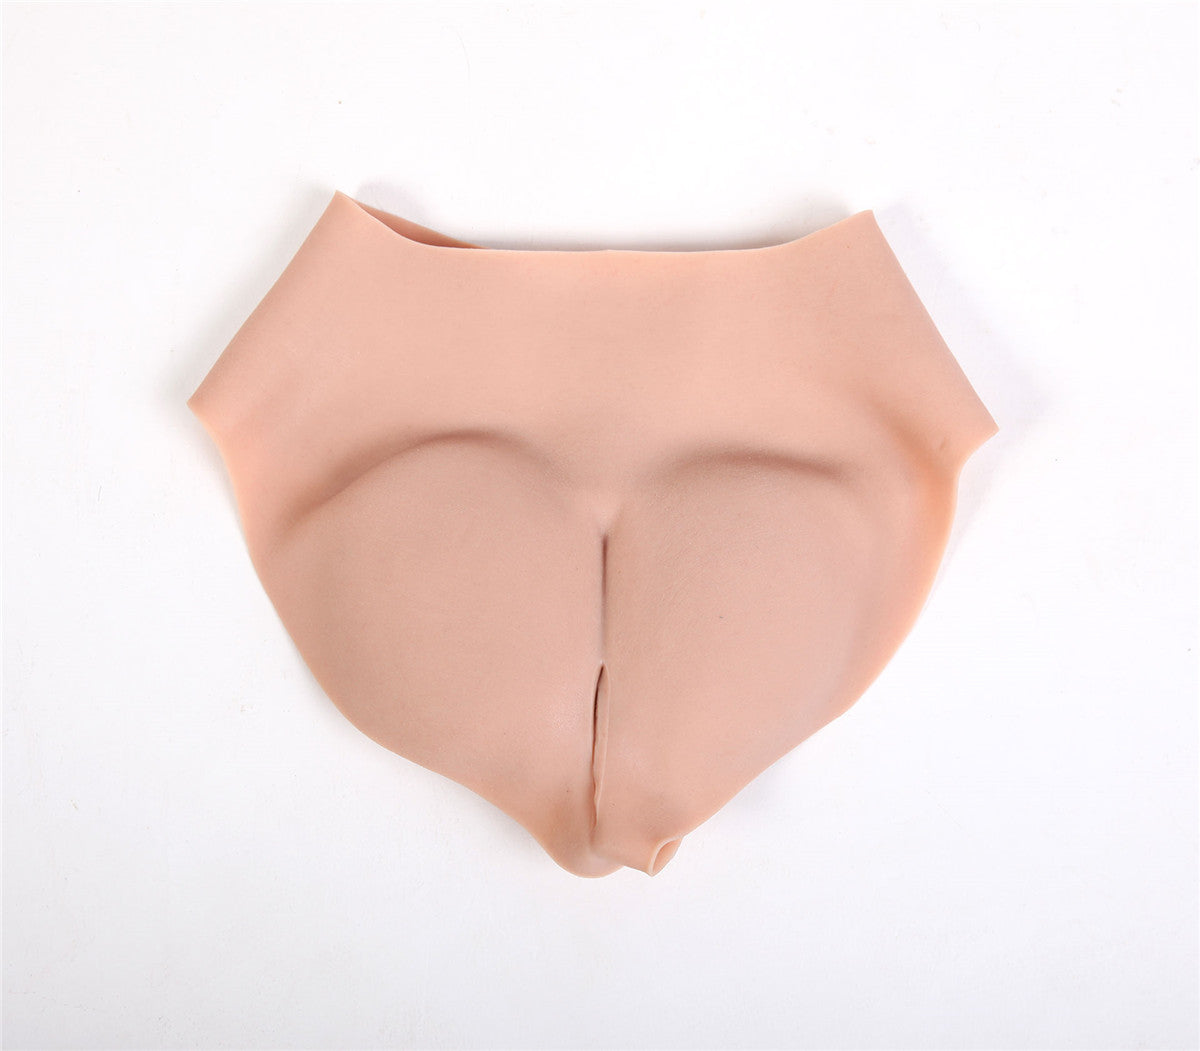 „Cheryl“-Prothesen-Silikon-Vagina-Gürtelhose für Frauen, durchdringbar mit Schlauch 